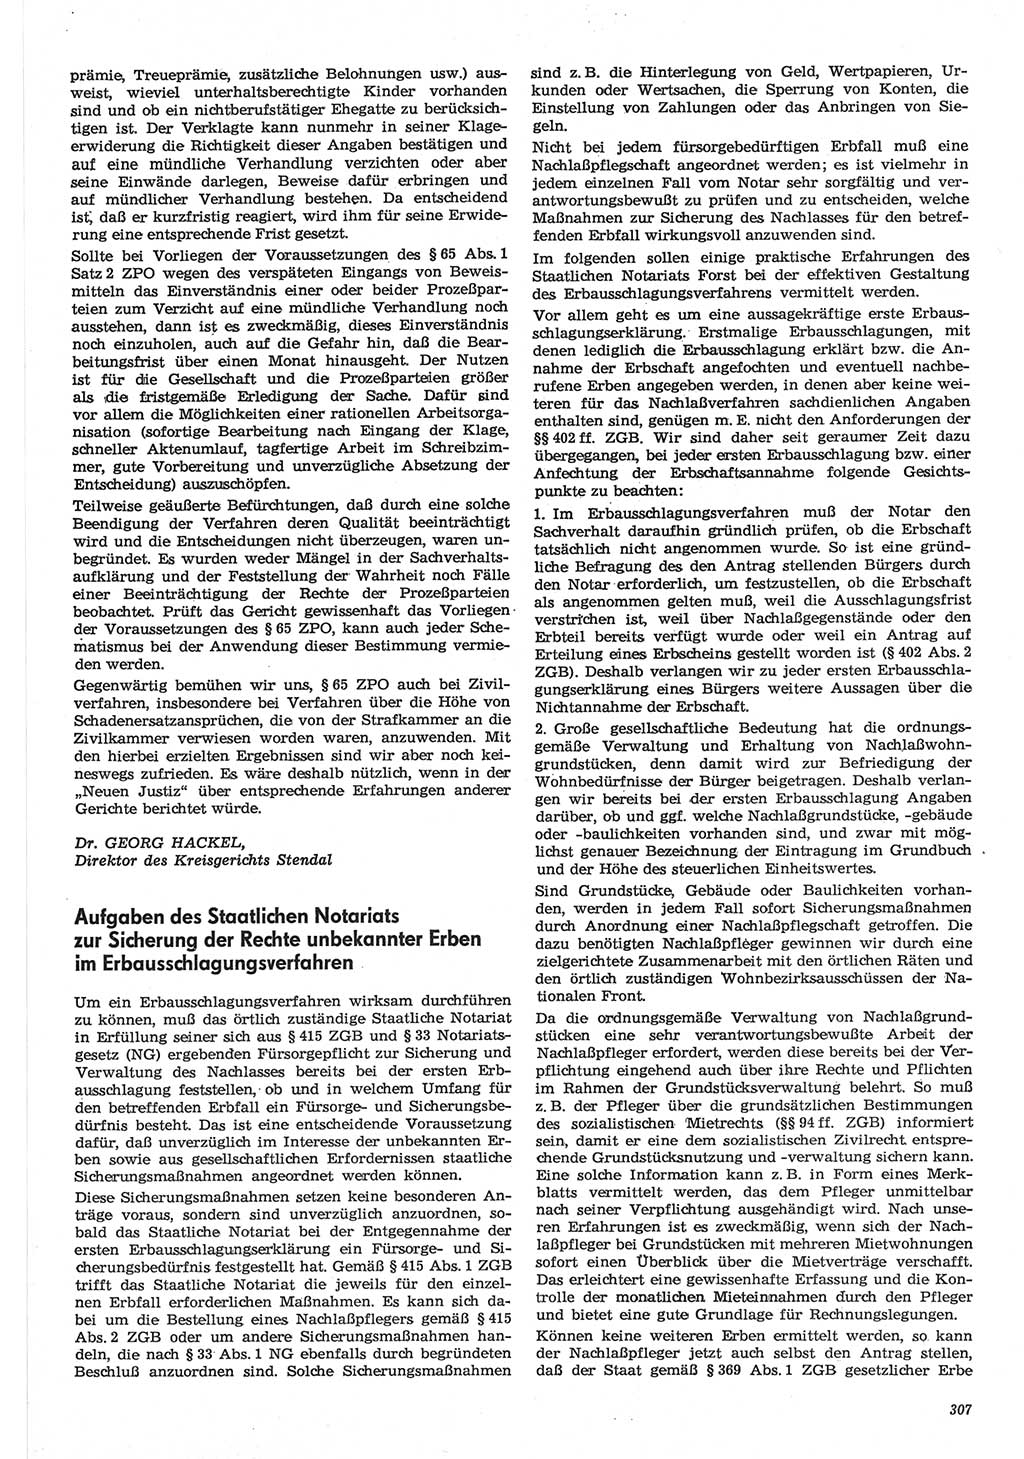 Neue Justiz (NJ), Zeitschrift für Recht und Rechtswissenschaft-Zeitschrift, sozialistisches Recht und Gesetzlichkeit, 31. Jahrgang 1977, Seite 307 (NJ DDR 1977, S. 307)